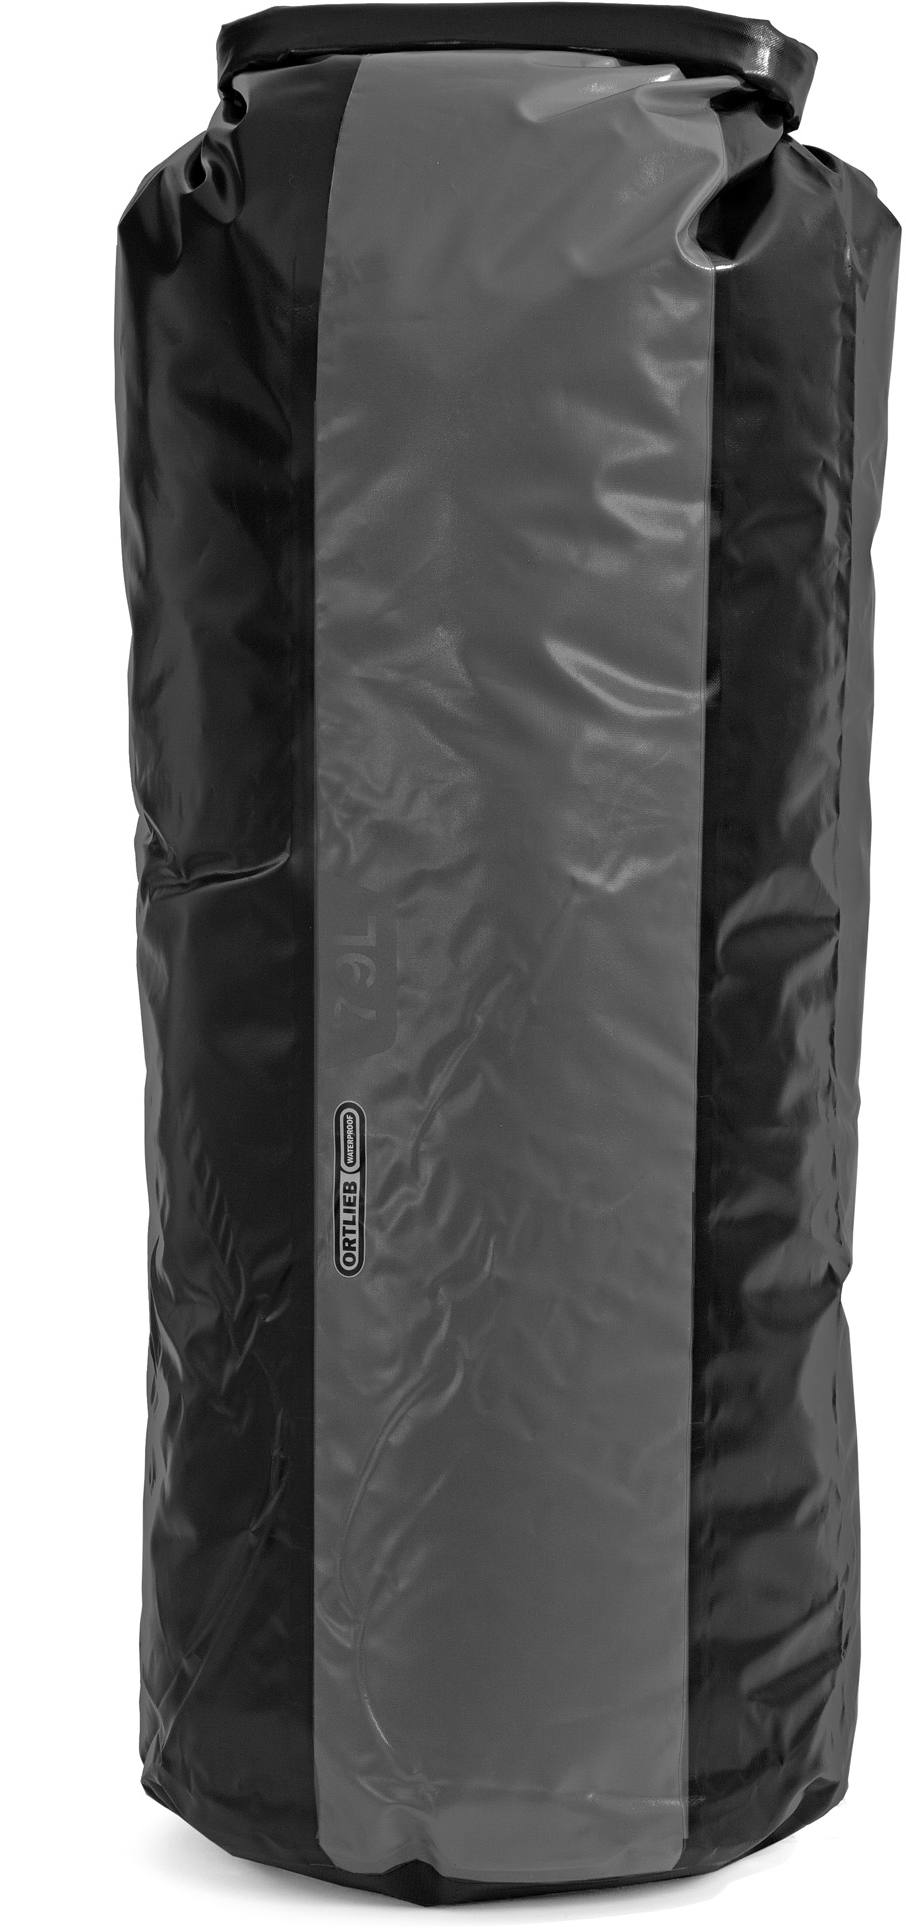 Ortlieb Drybag K4851 PD 350 79 L Black